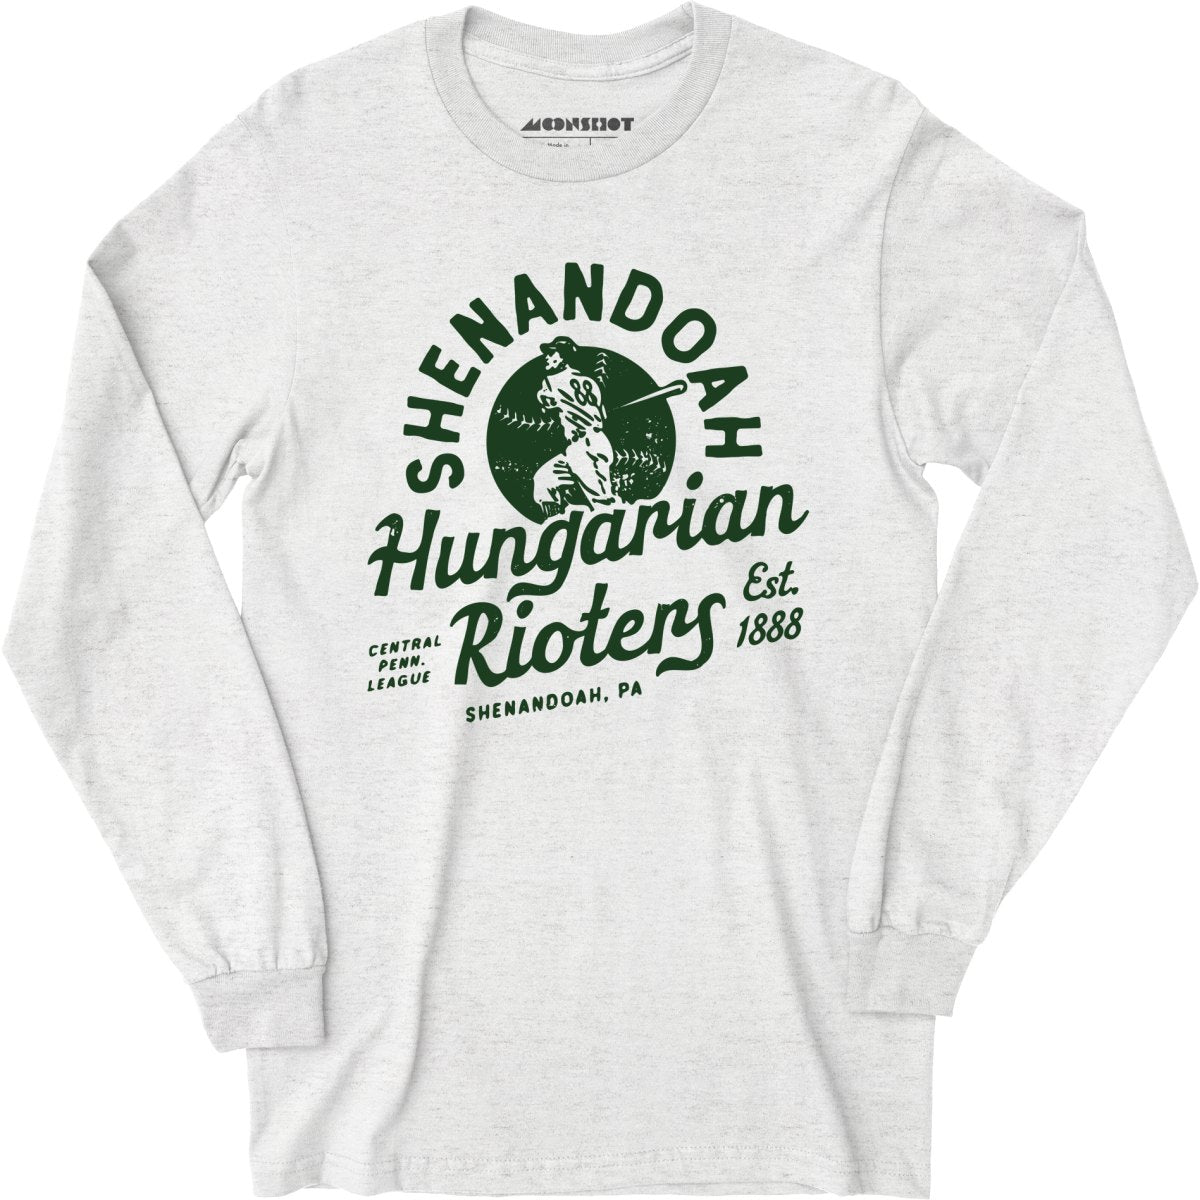 Shenandoah Hungarian Rioters - Pennsylvania - Vintage Defunct Baseball Teams - Long Sleeve T-Shirt